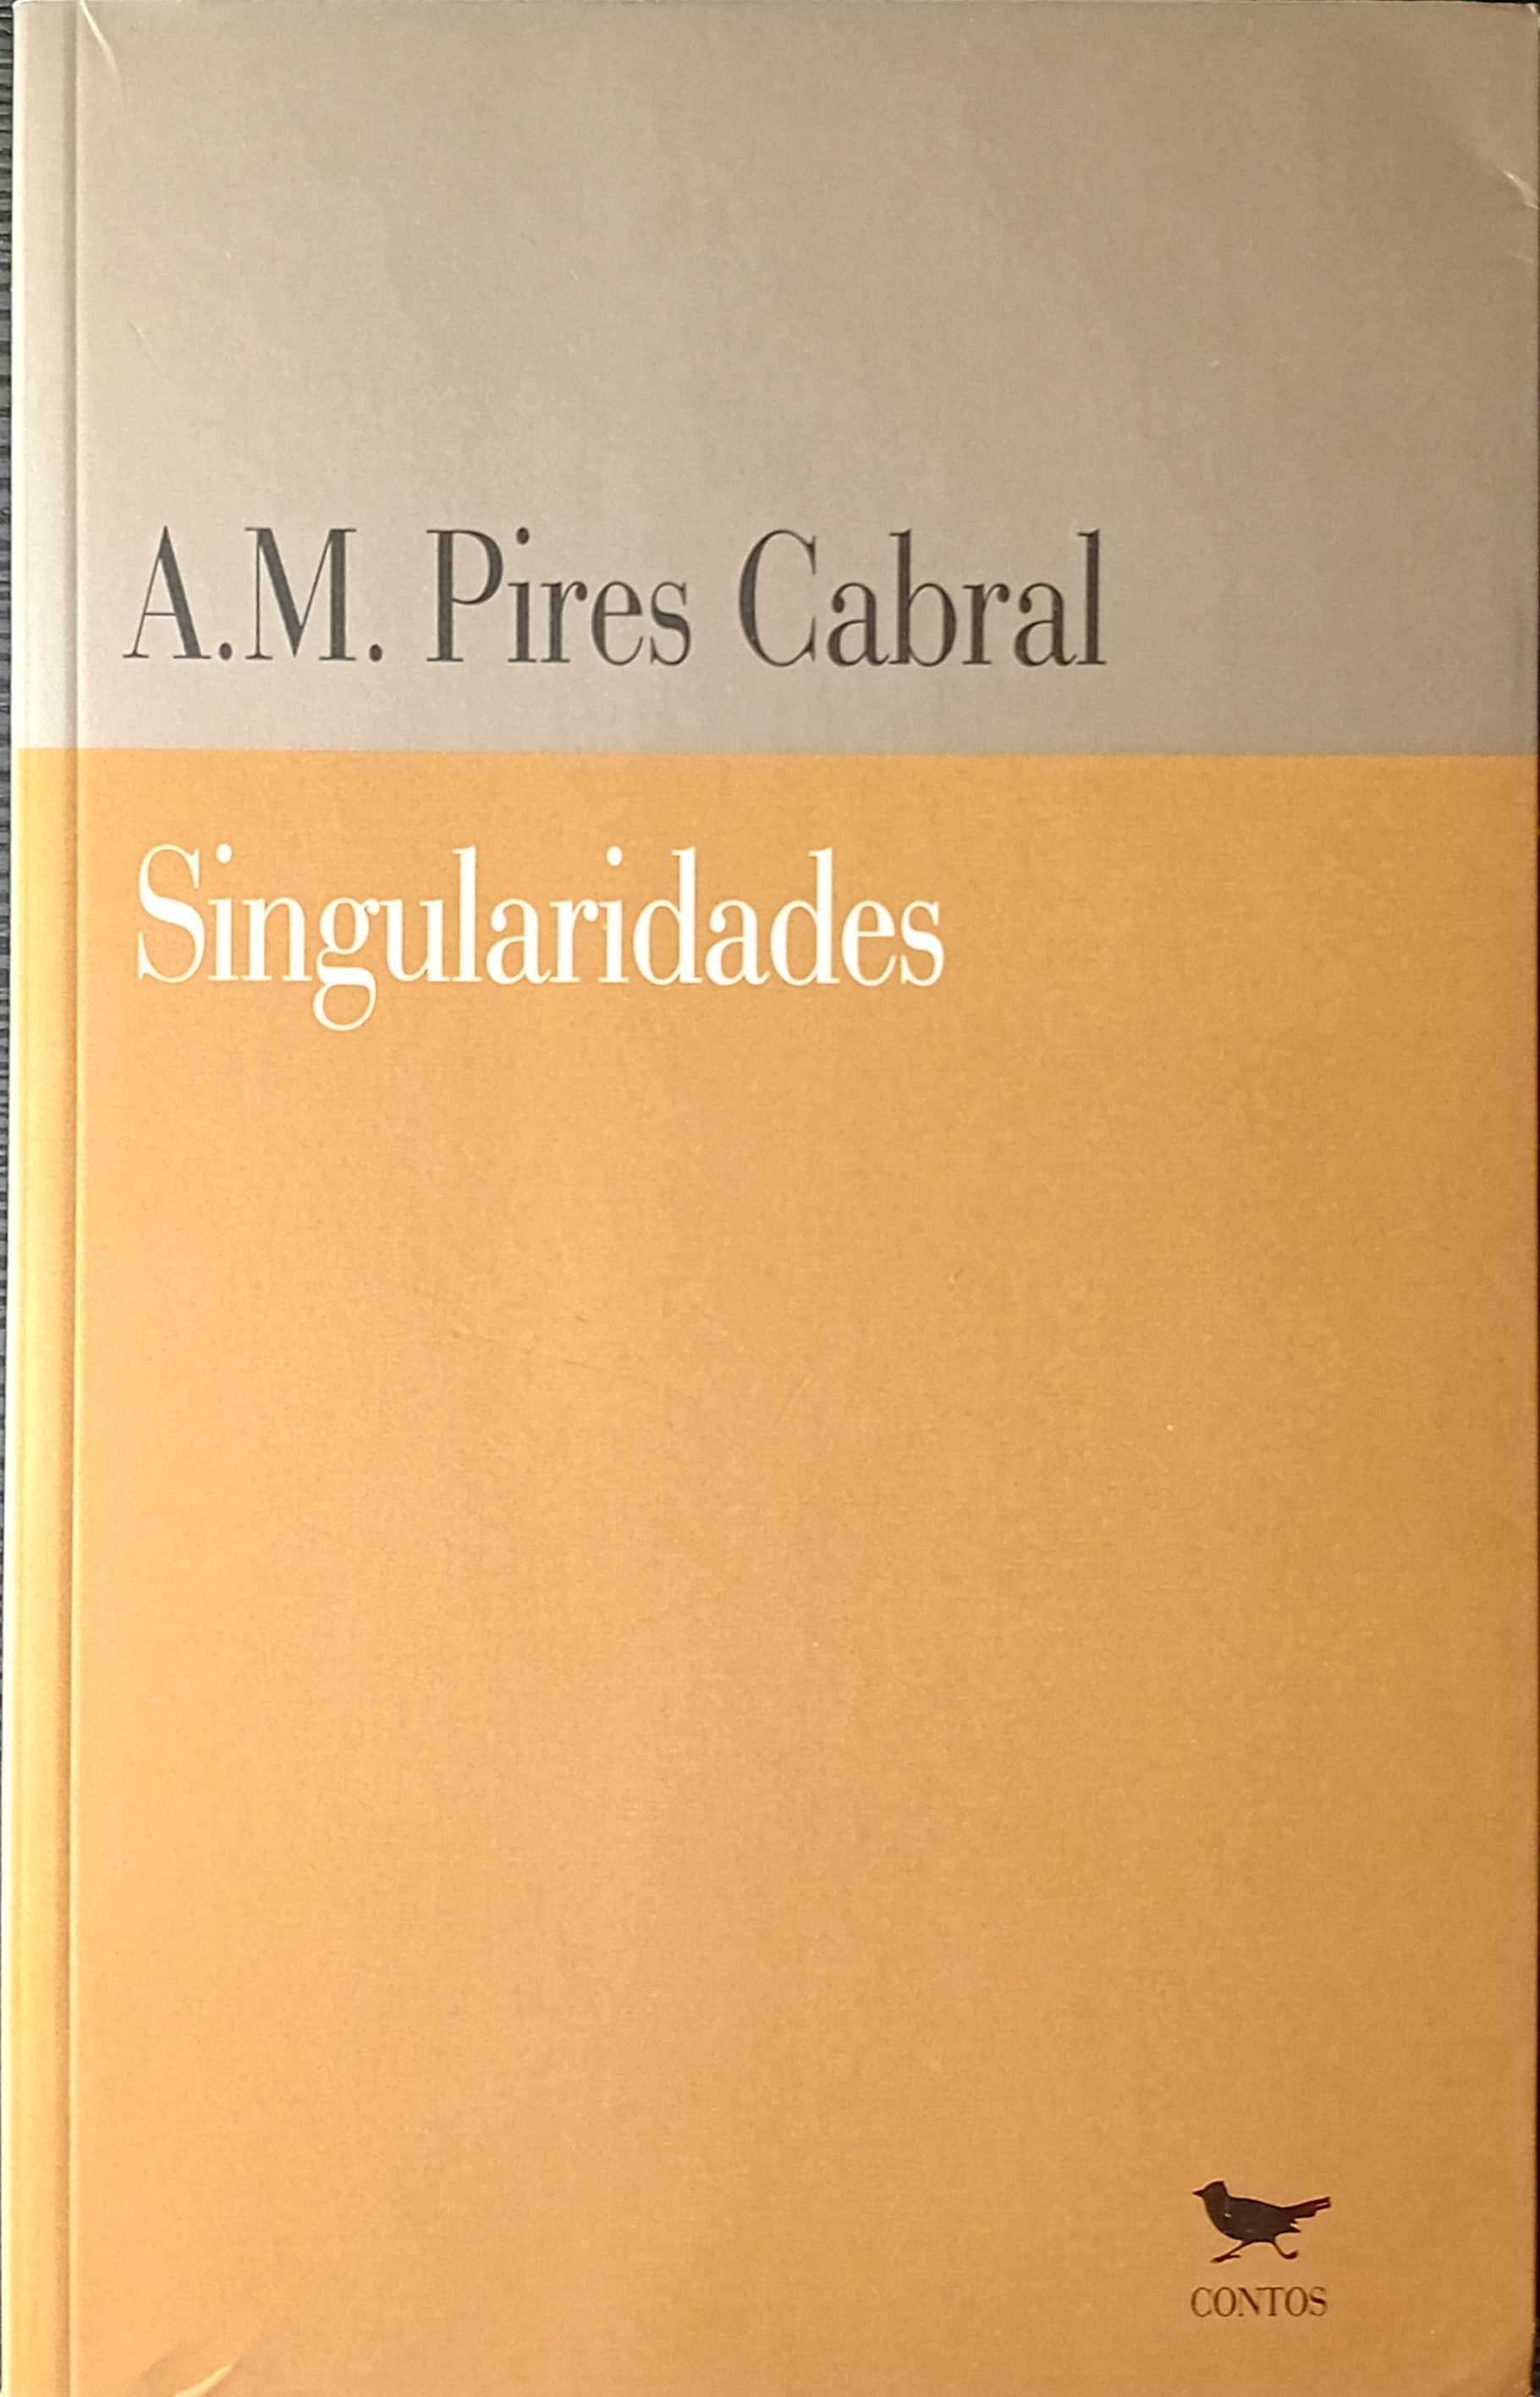 Singularidades - A. M. Pires Cabral